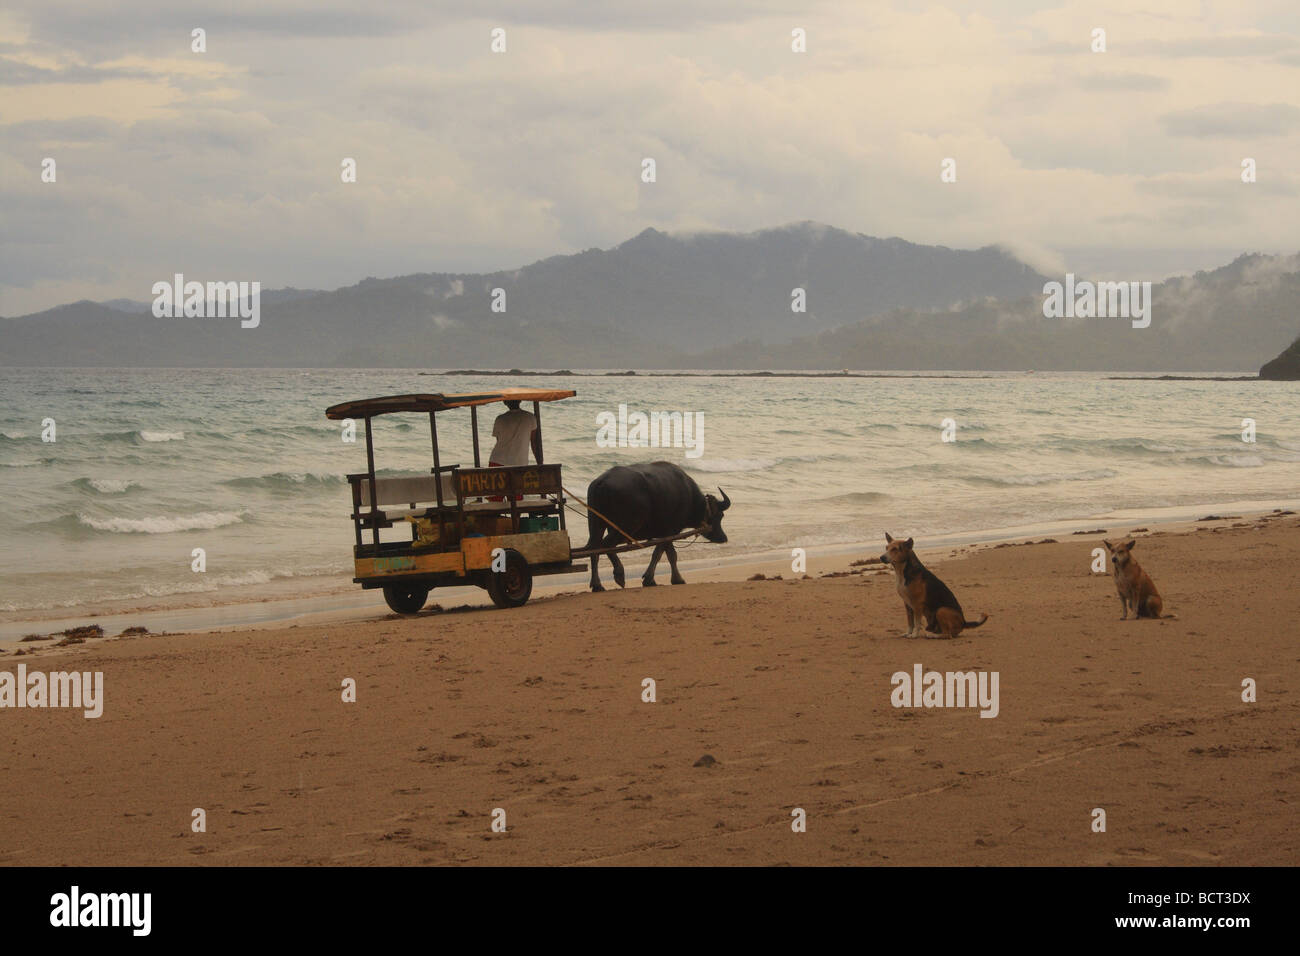 La mer de sable et d'animaux sur l'Asie beach Banque D'Images